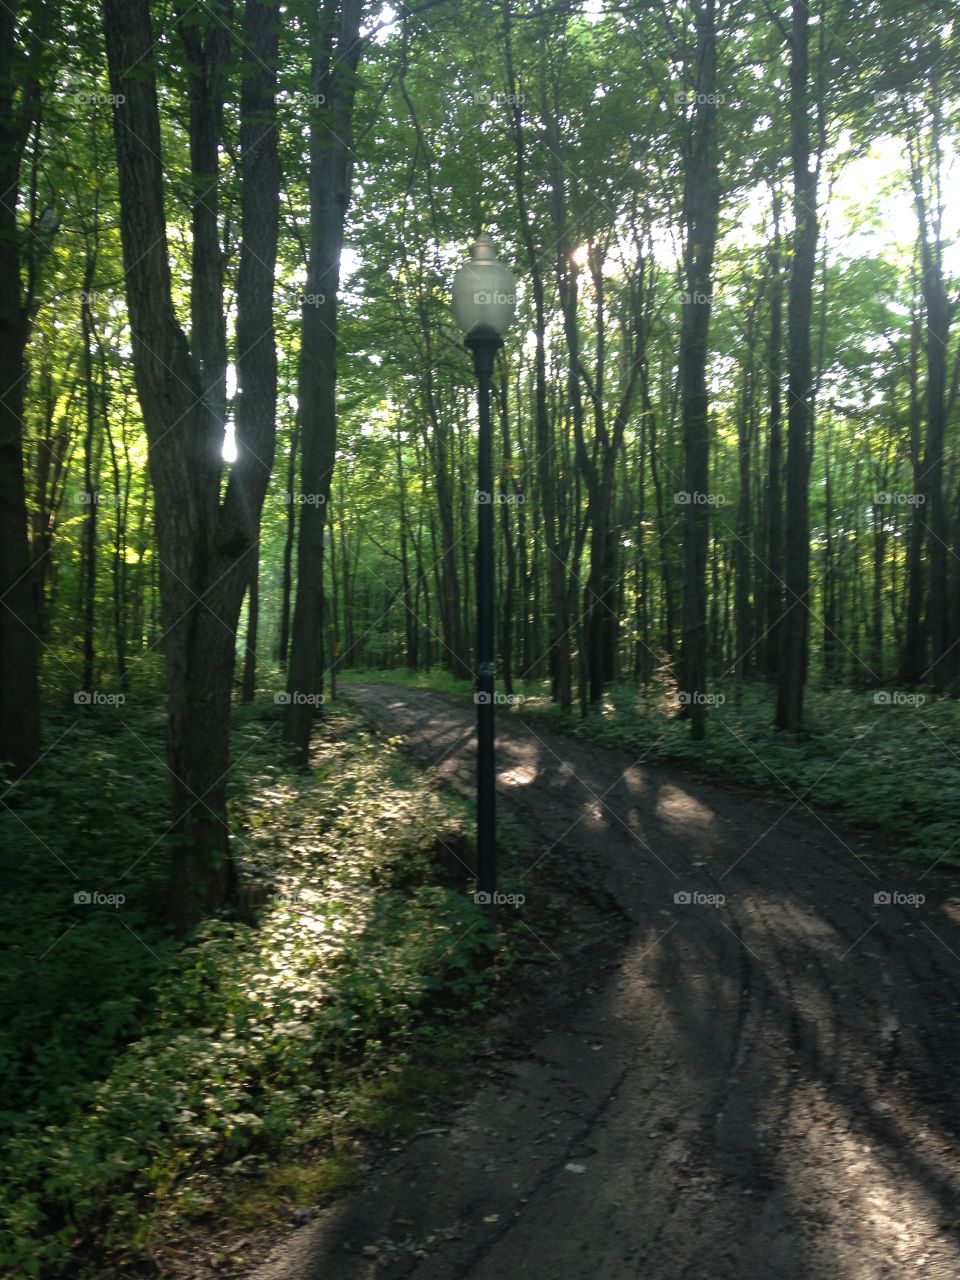 Bromfield Trail. Taken on July 1st, 2015 in Mansfield, OH. 